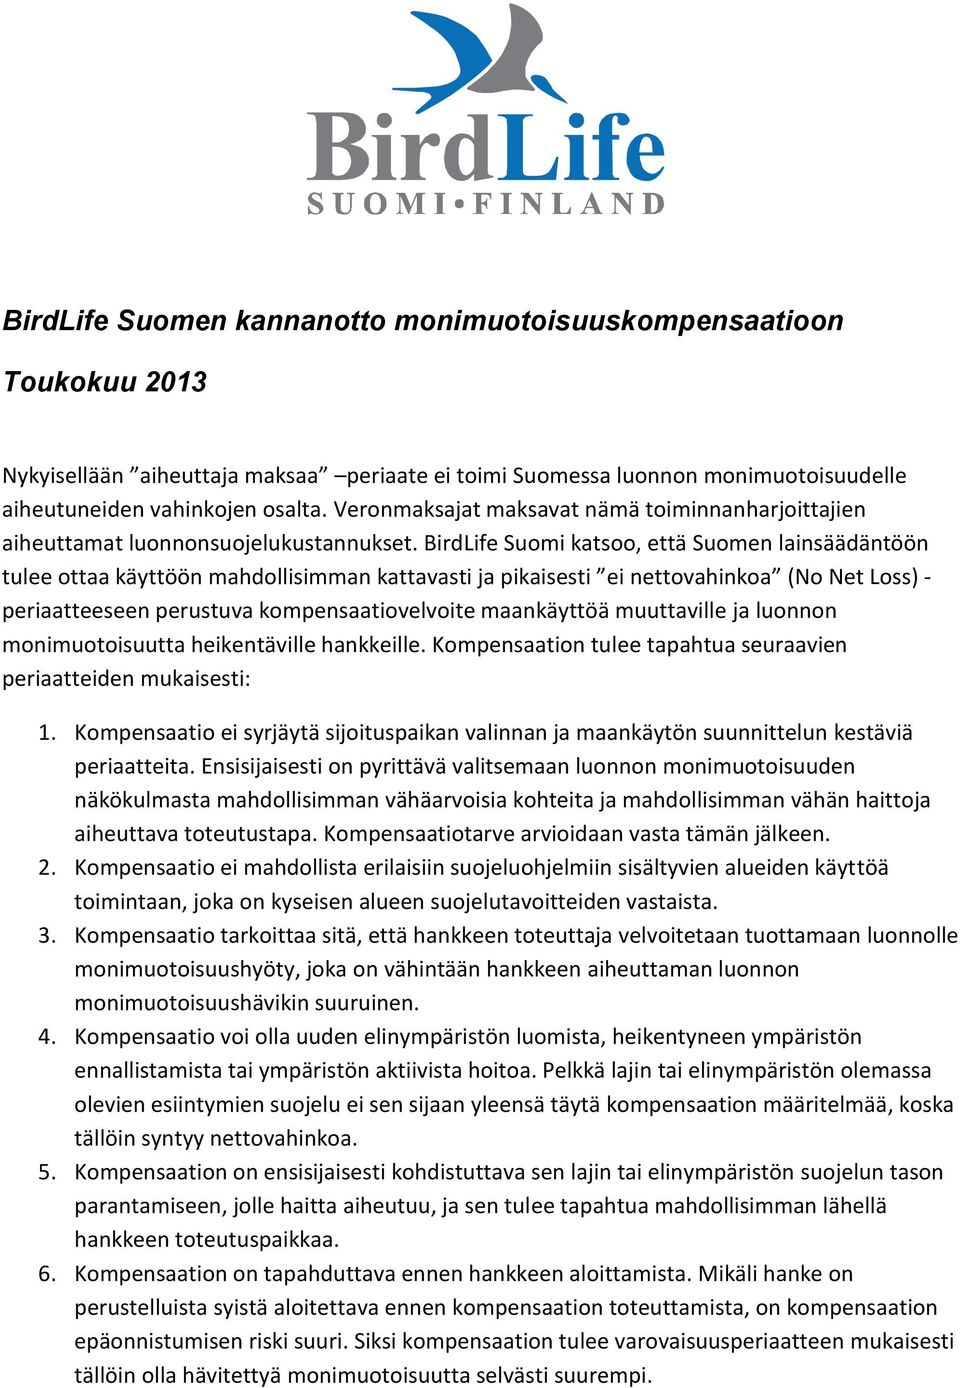 BirdLife Suomi katsoo, että Suomen lainsäädäntöön tulee ottaa käyttöön mahdollisimman kattavasti ja pikaisesti ei nettovahinkoa (No Net Loss) - periaatteeseen perustuva kompensaatiovelvoite